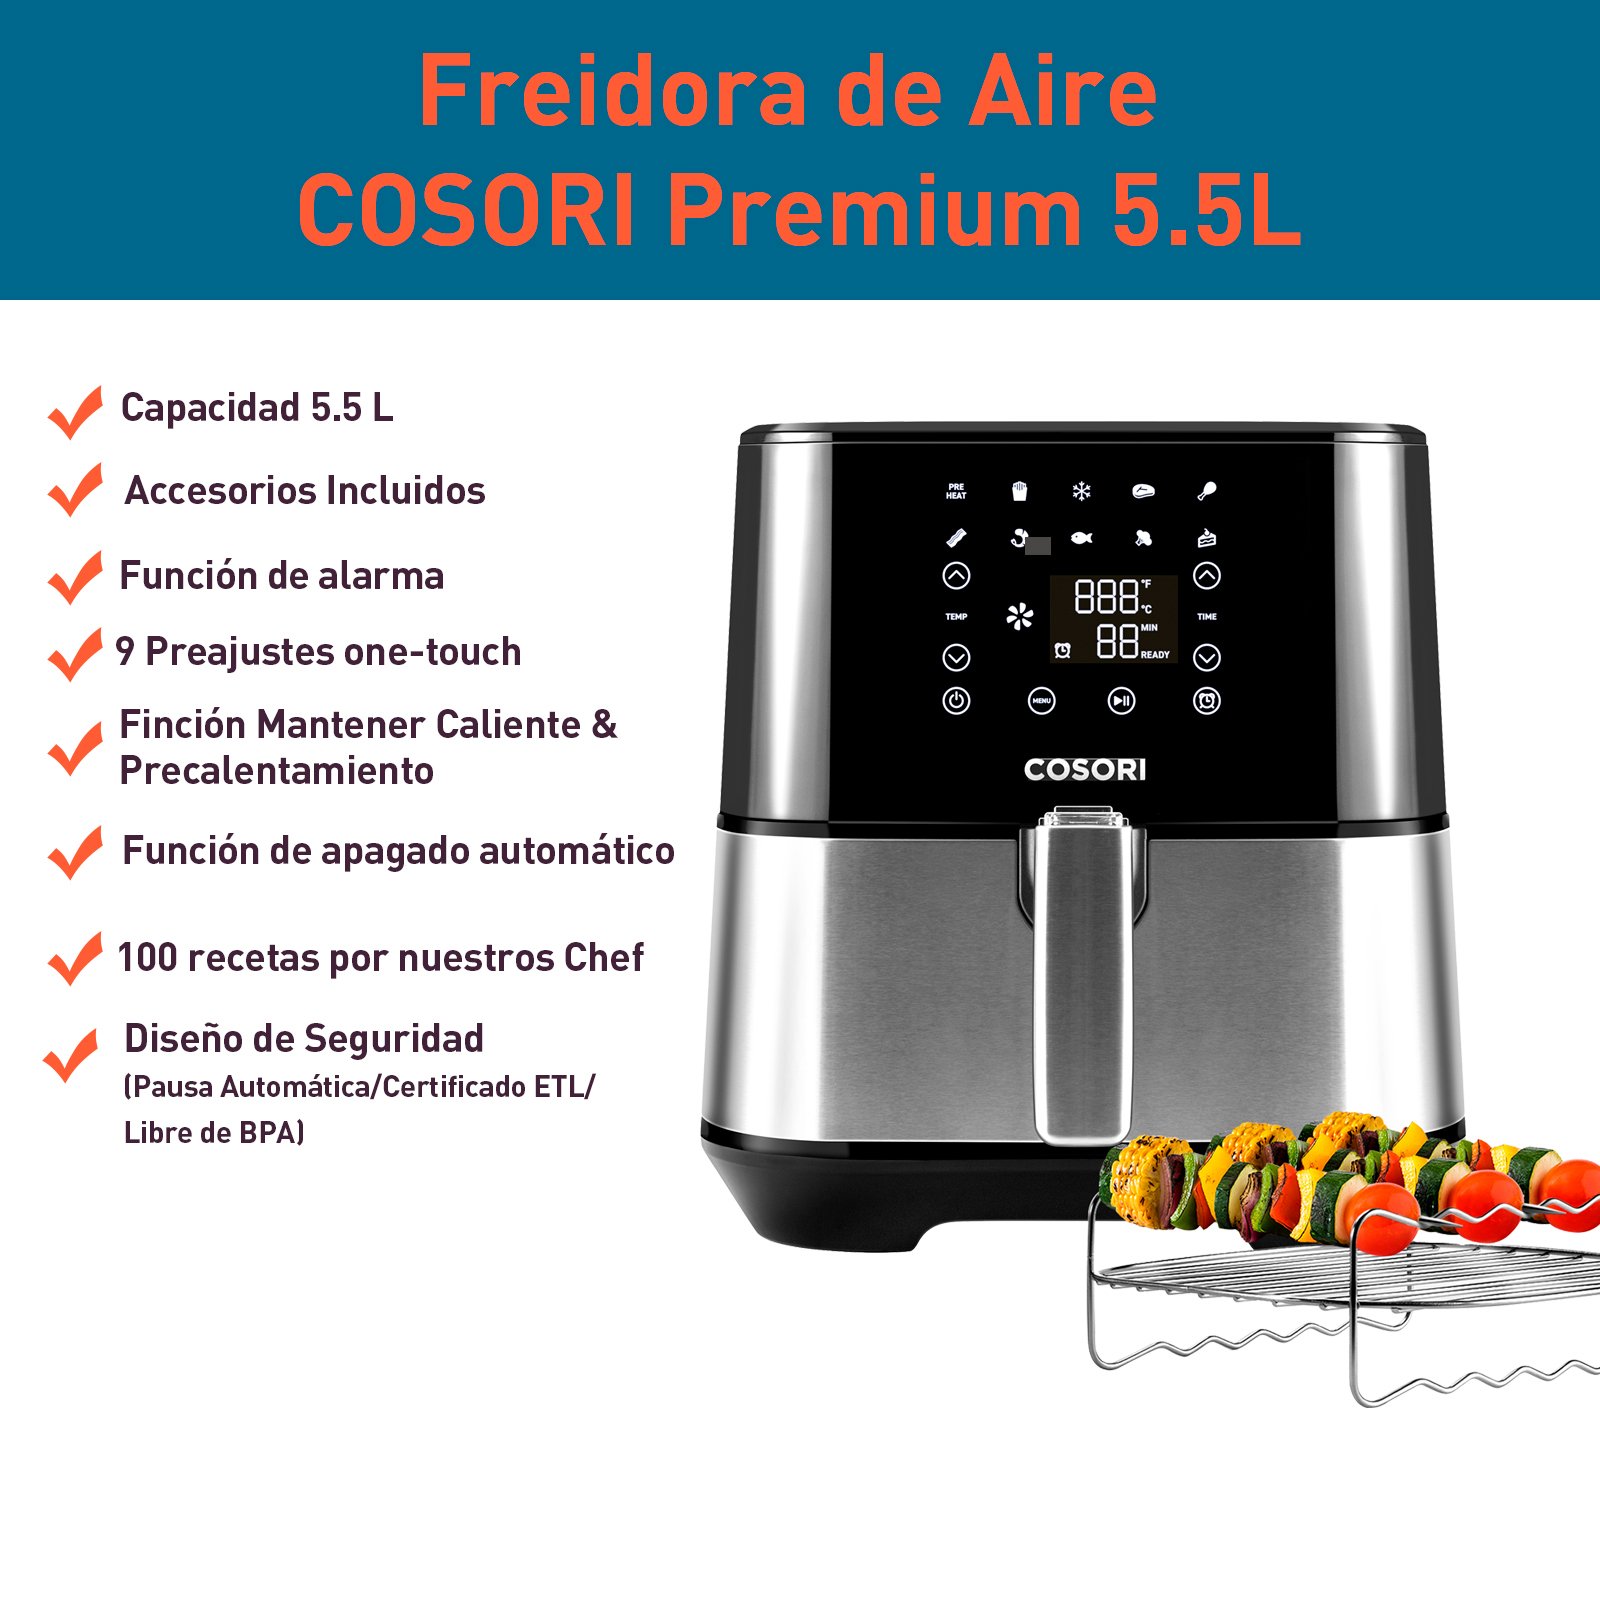 Freidora de Aire Premium Cosori 5.5L con rejilla y brocheteros